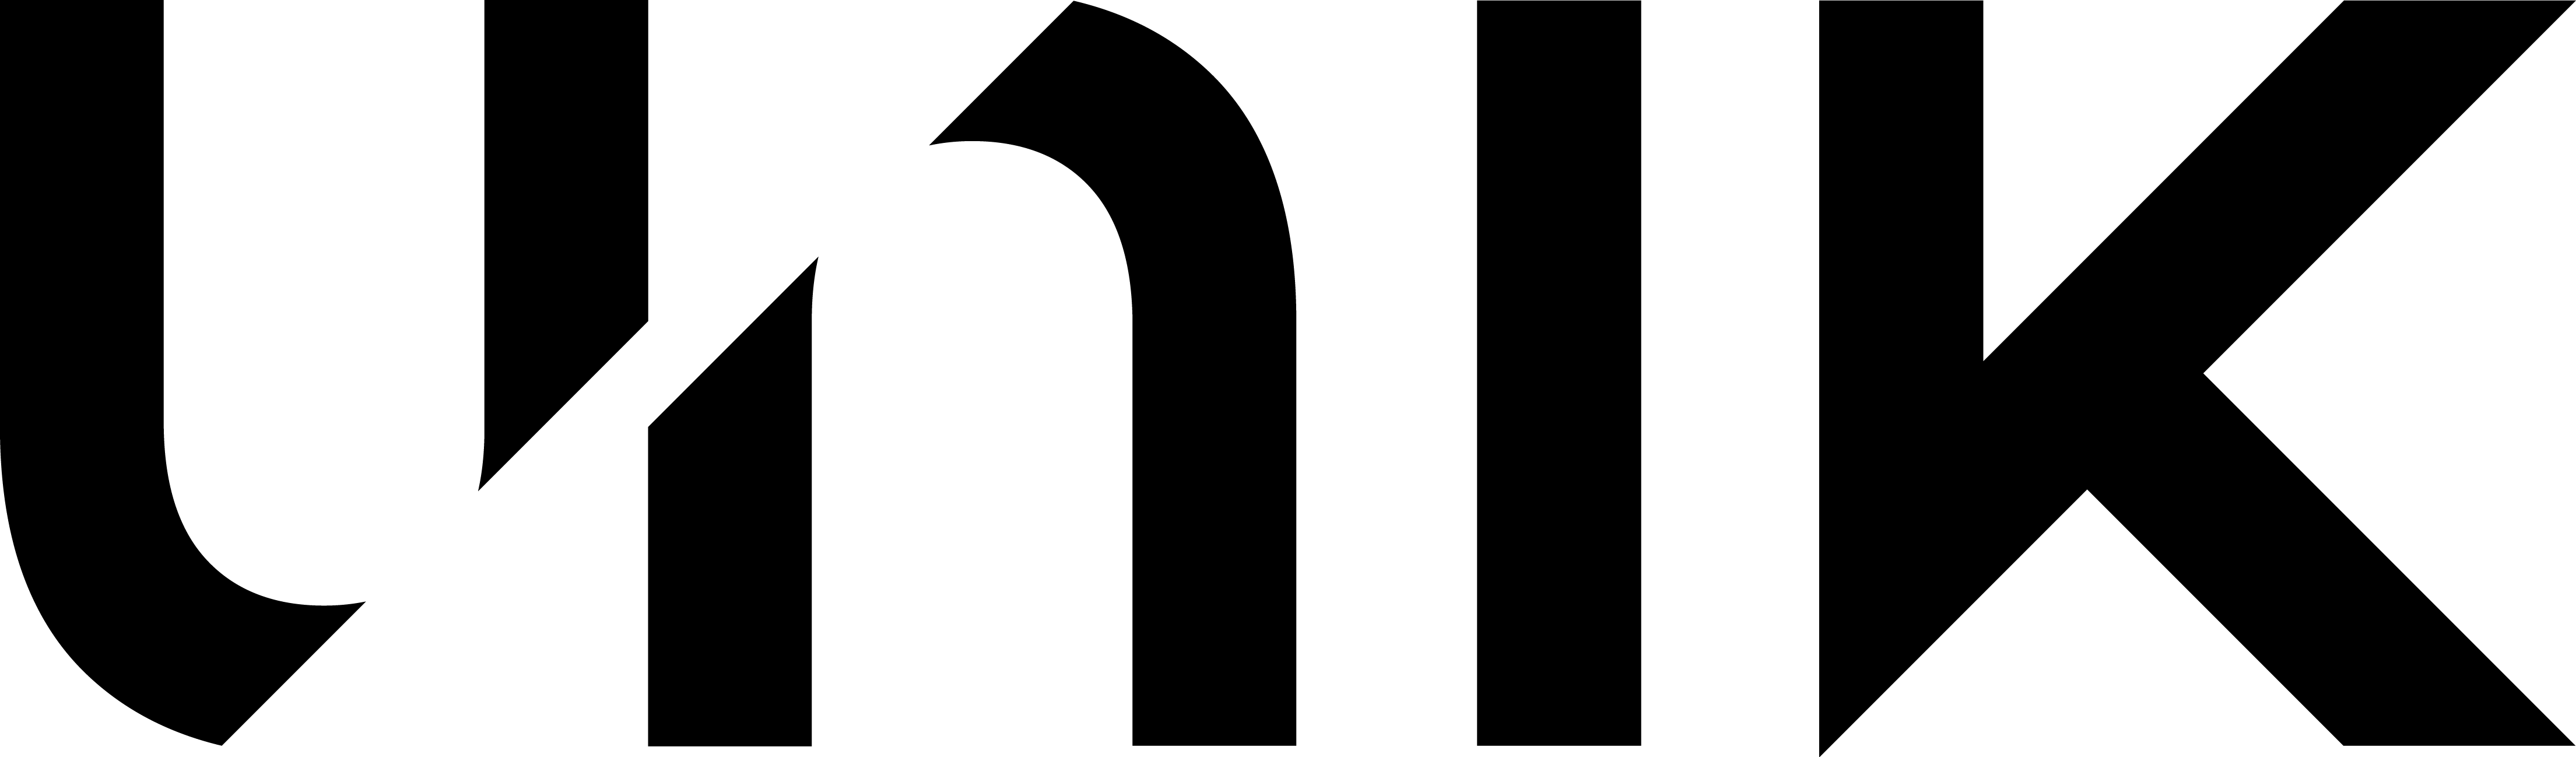 Unik-VVS logo